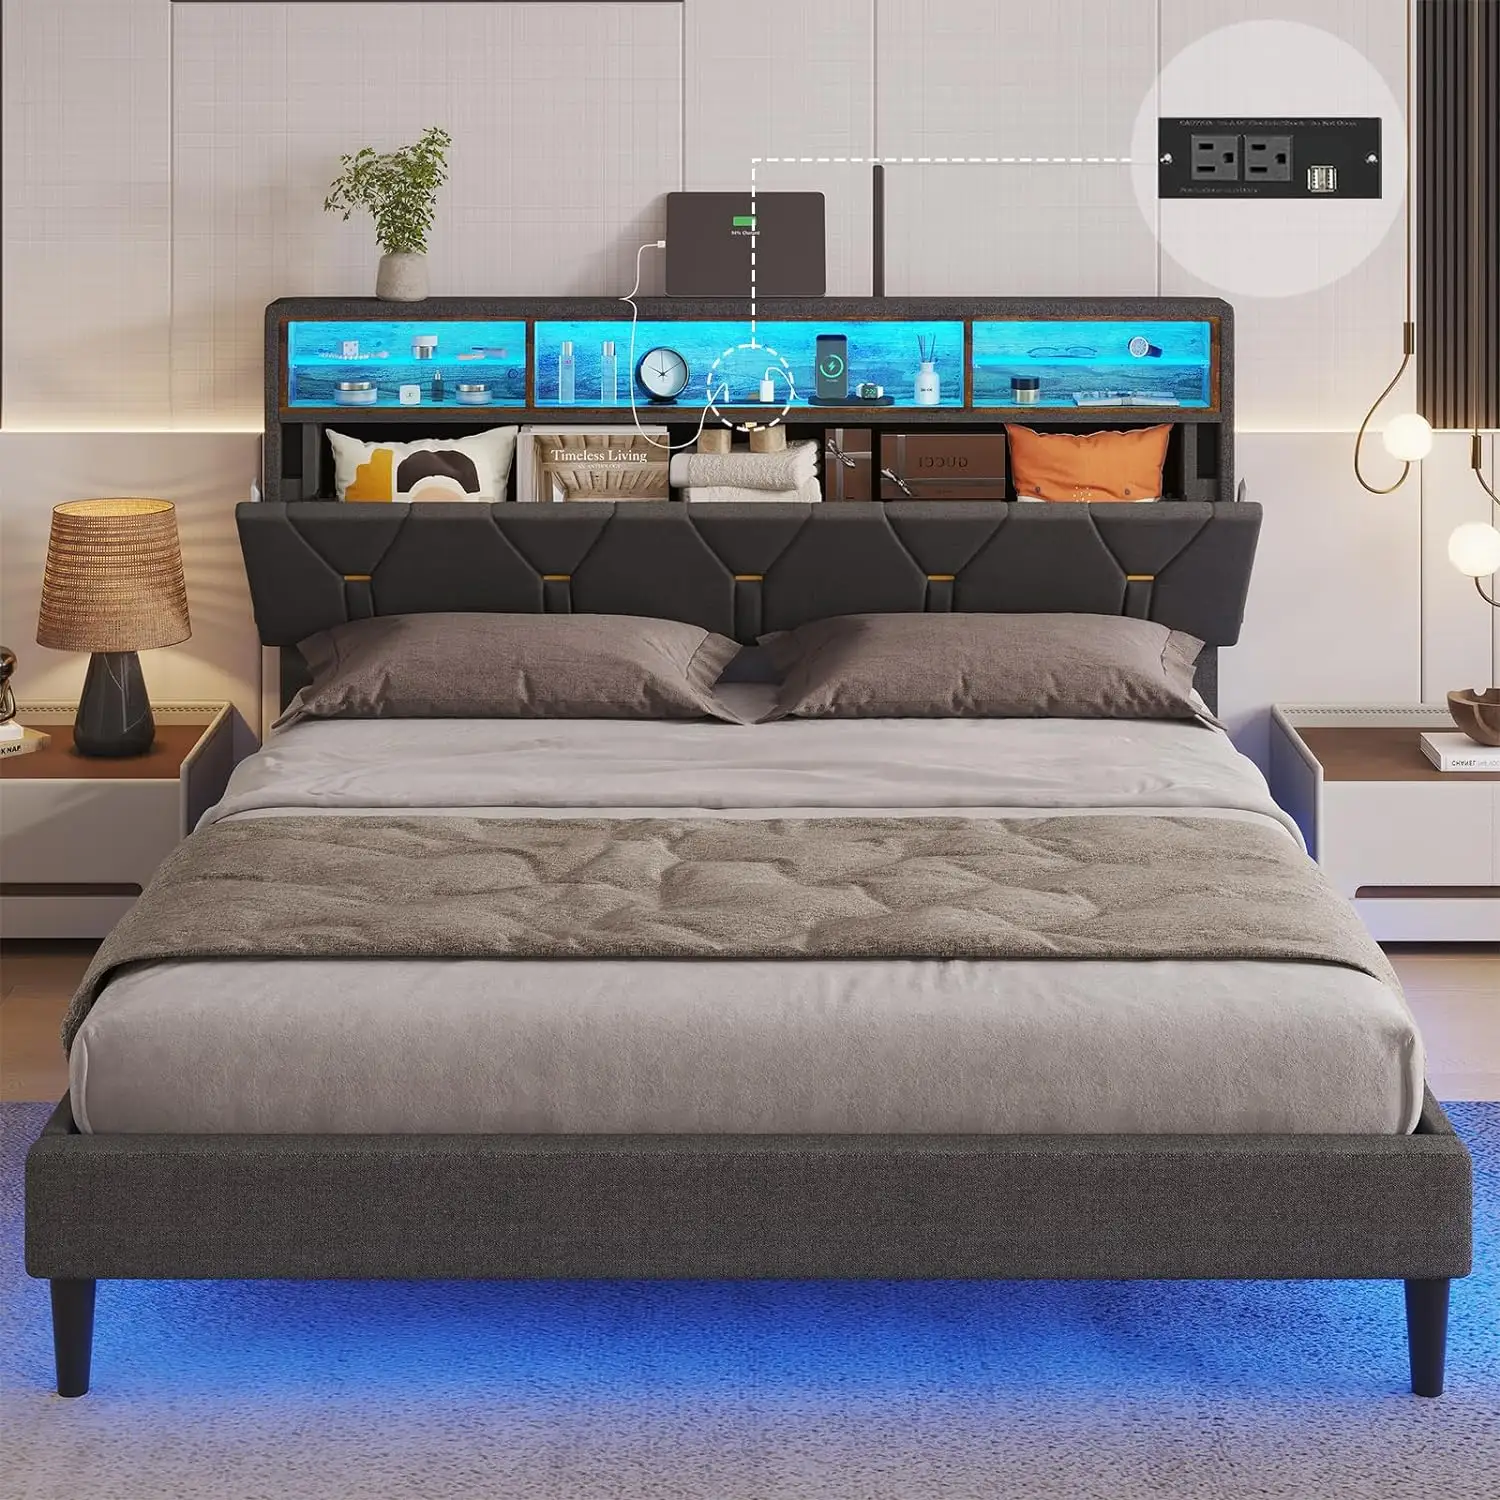 Neues Modell Bett Design King-Size-Schlafzimmermöbel mit Ablage und verschiedenen LED-Lichtern Farbe für das Bett